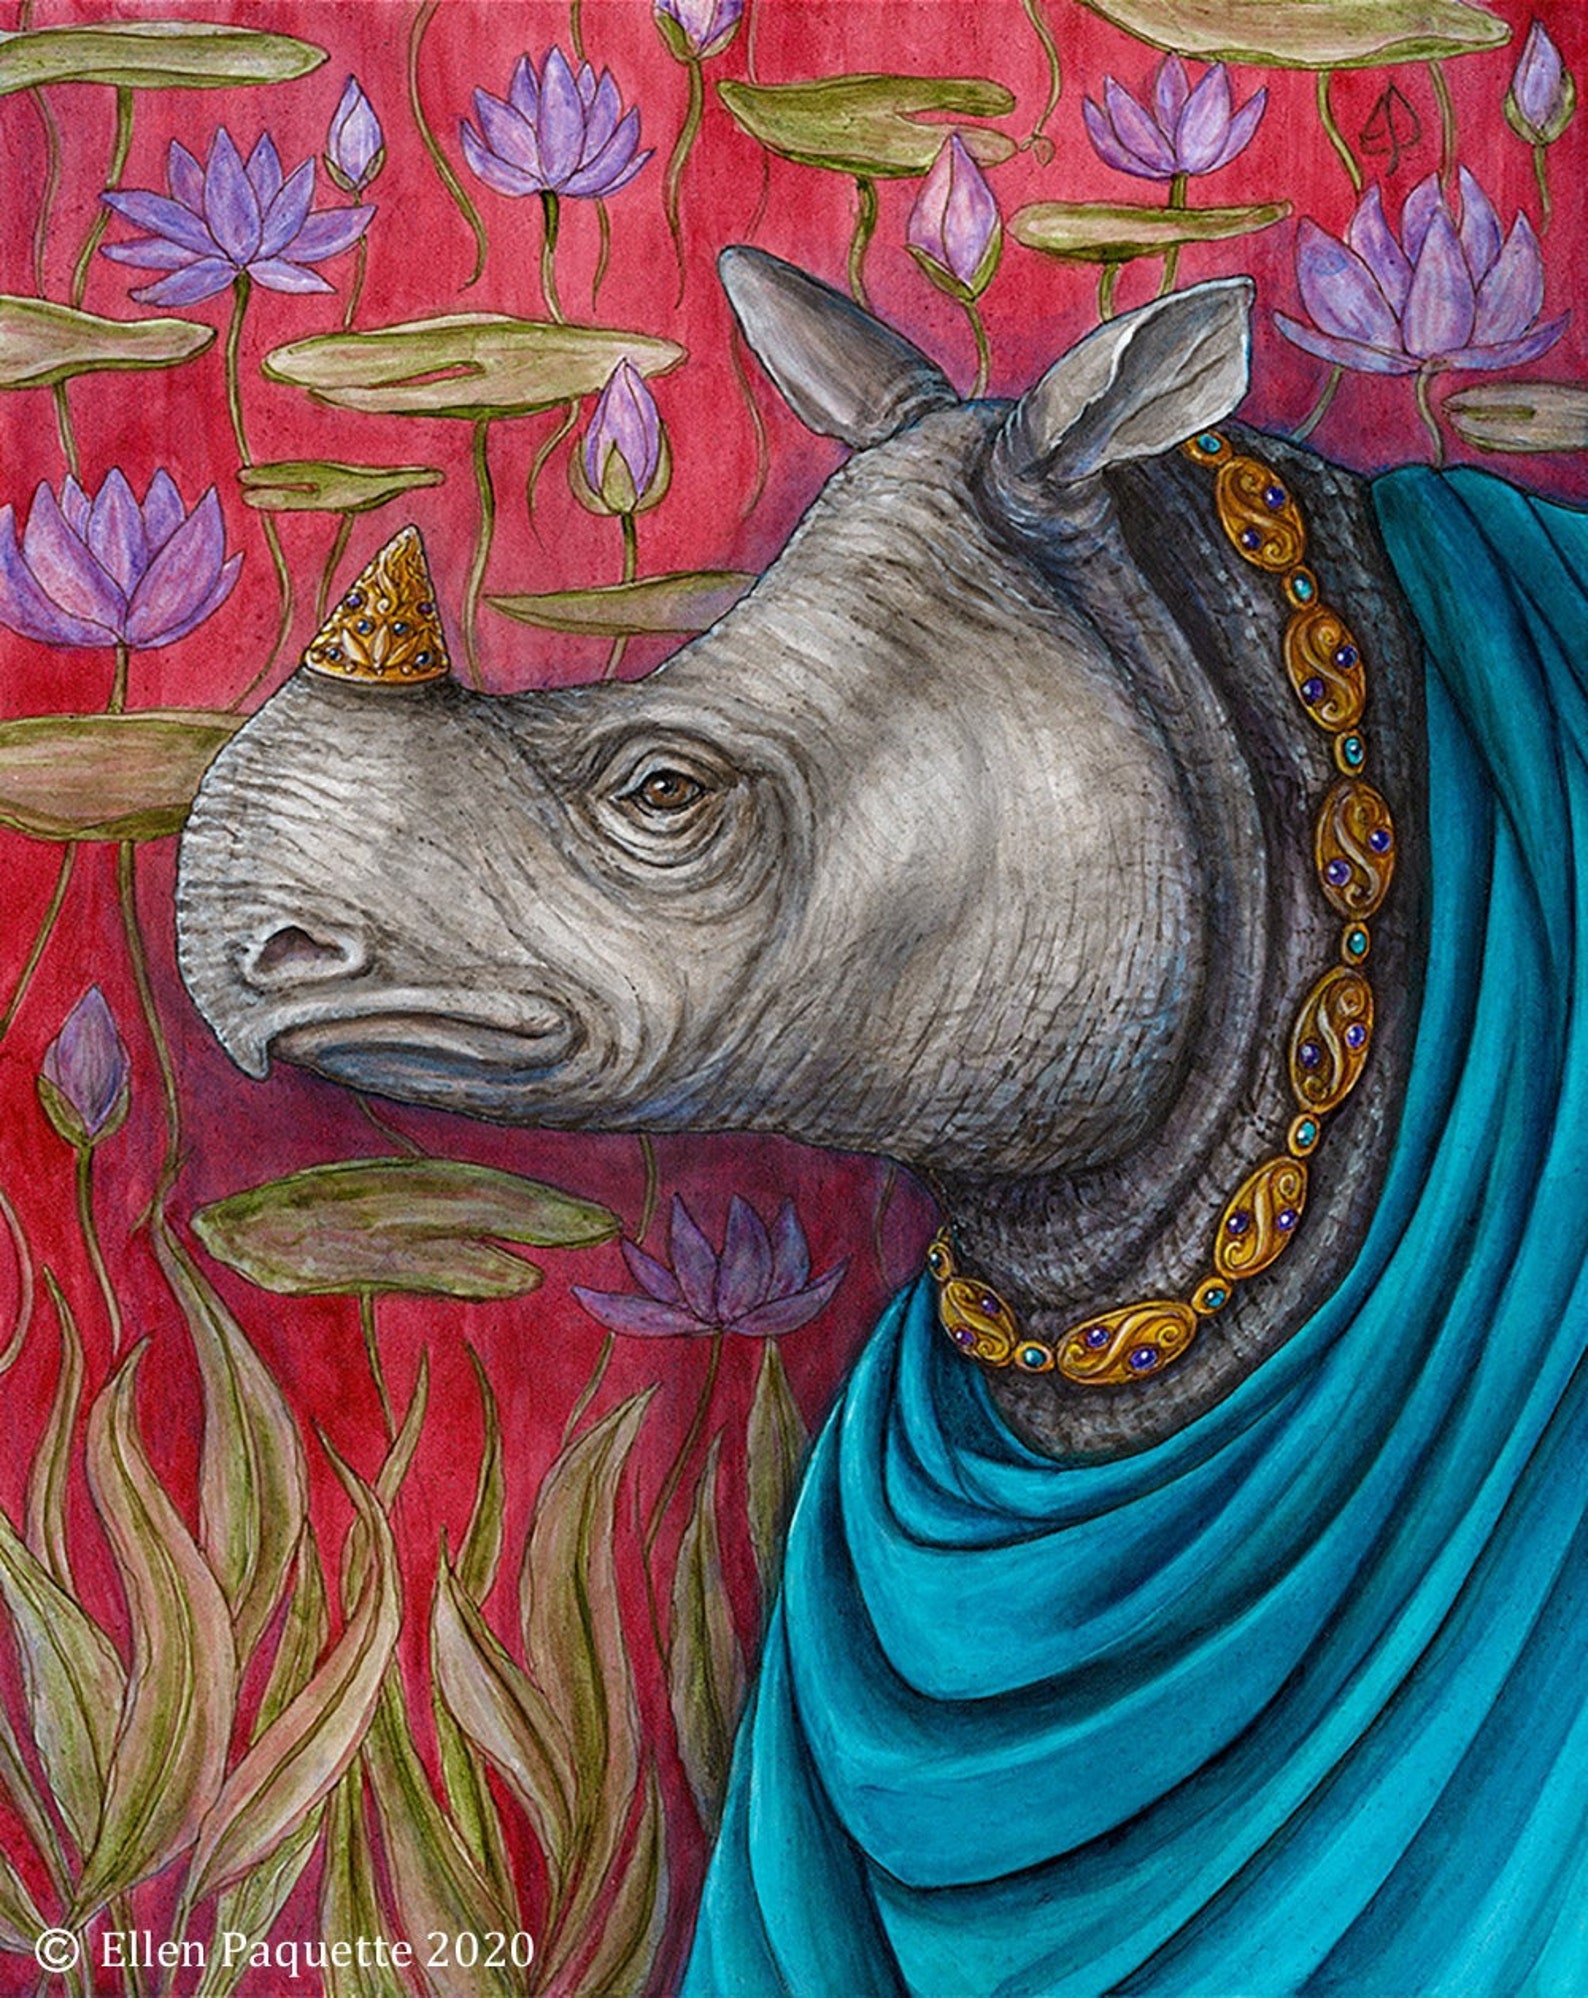 javan rhinoceros